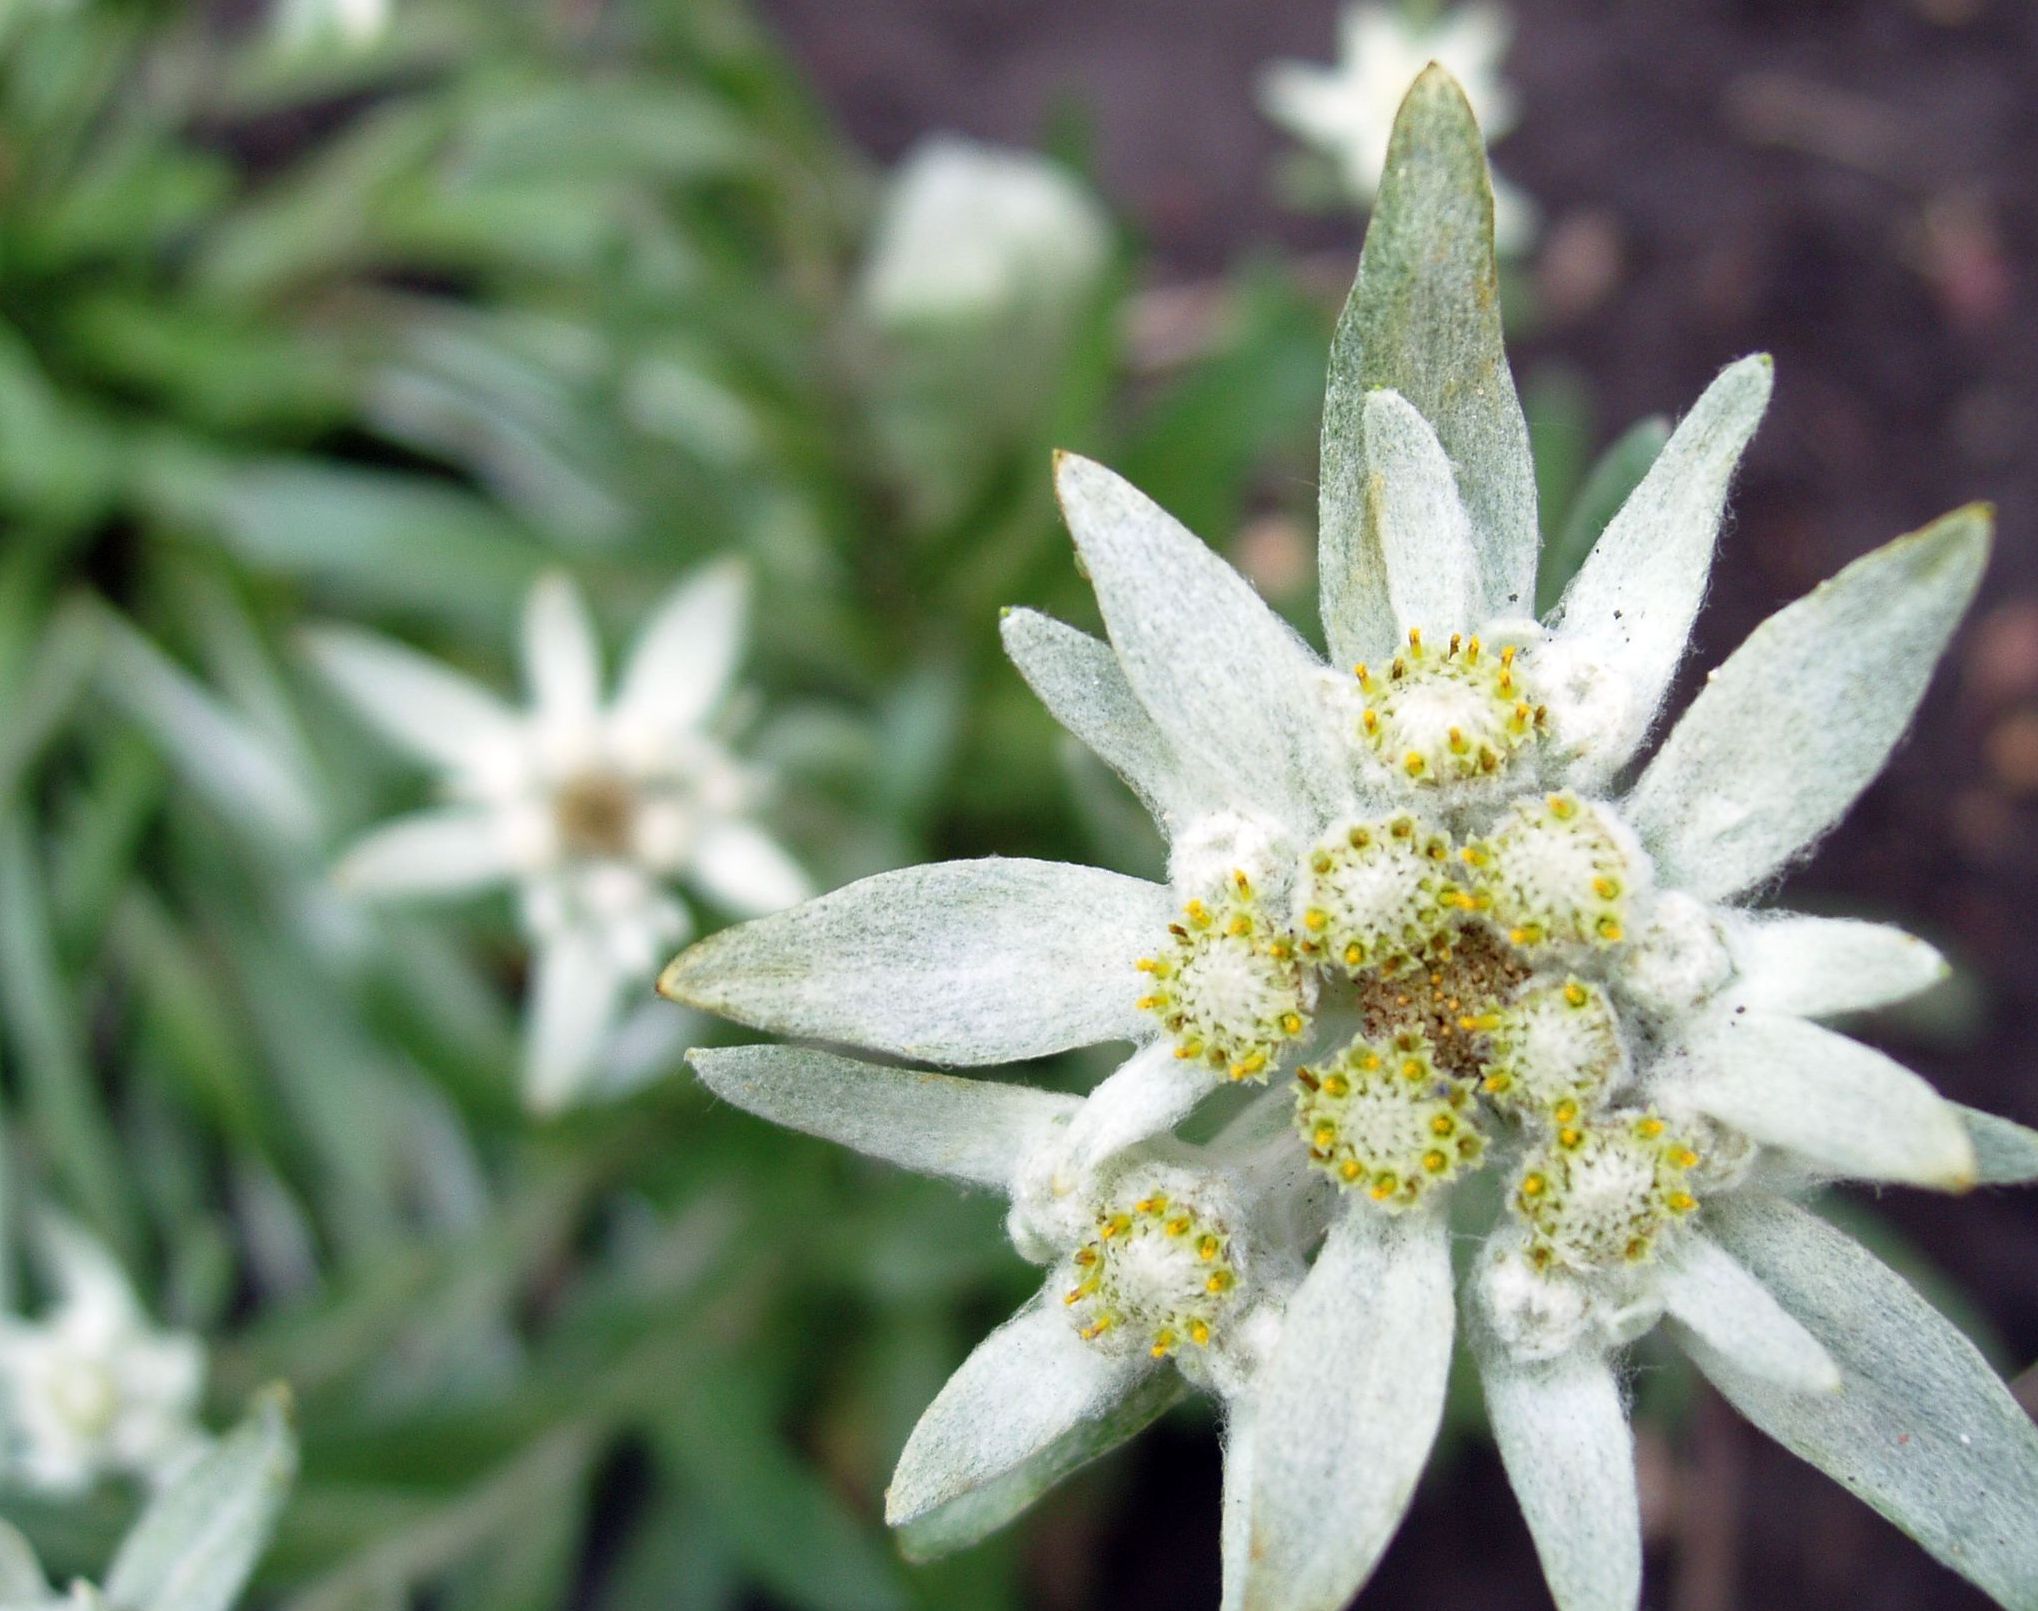 Эдельвейс цветок фото и описание